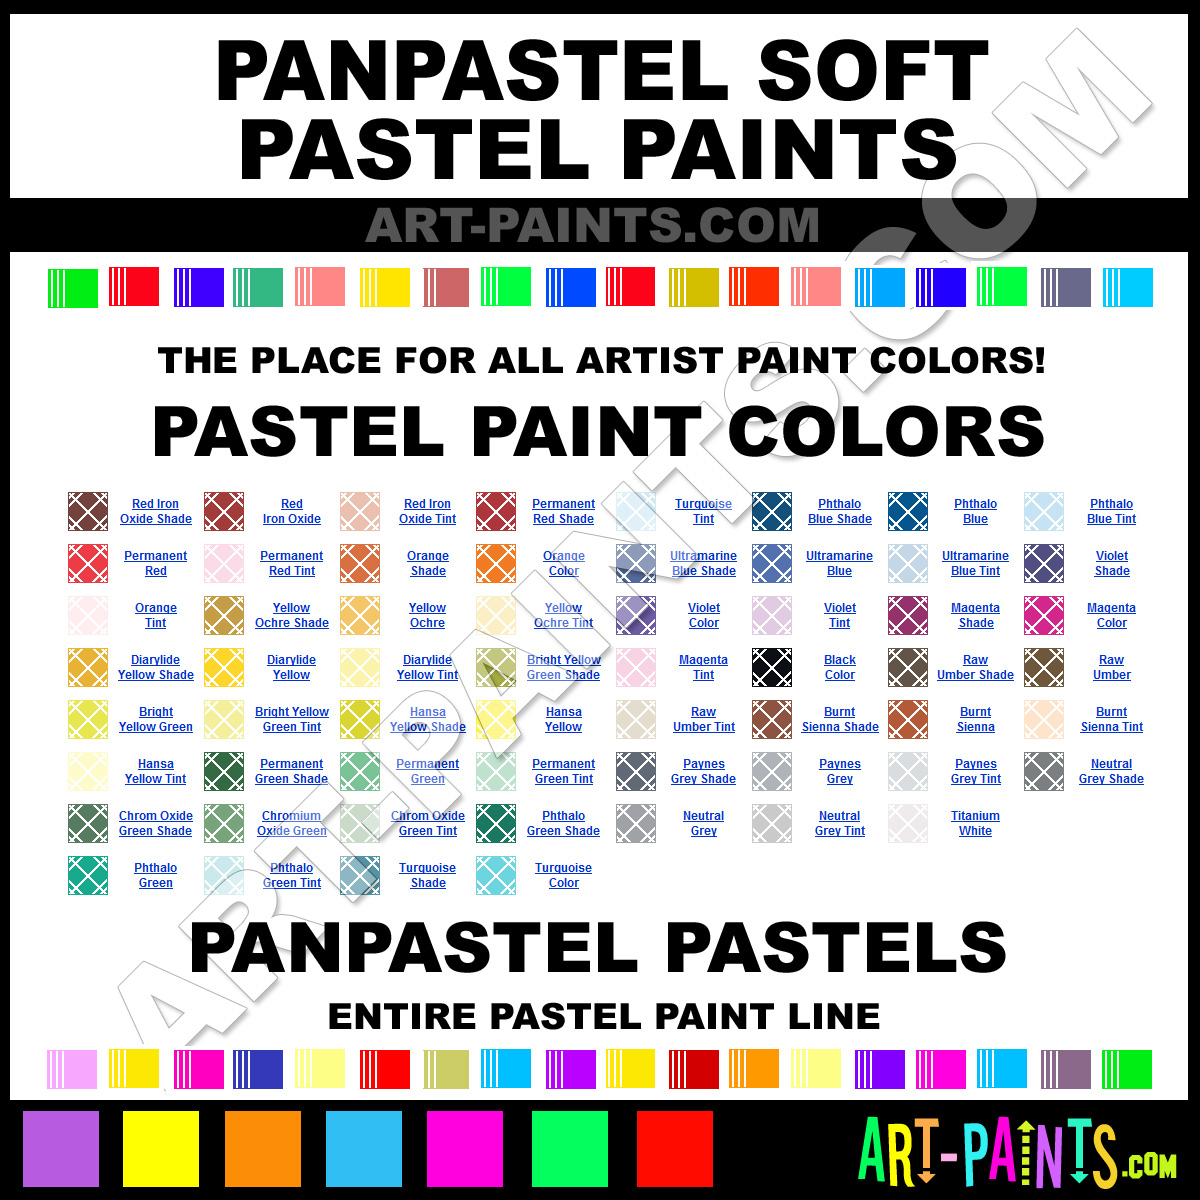 PanPastel Soft Pastel Paint Colors - PanPastel Soft Paint Colors, Soft